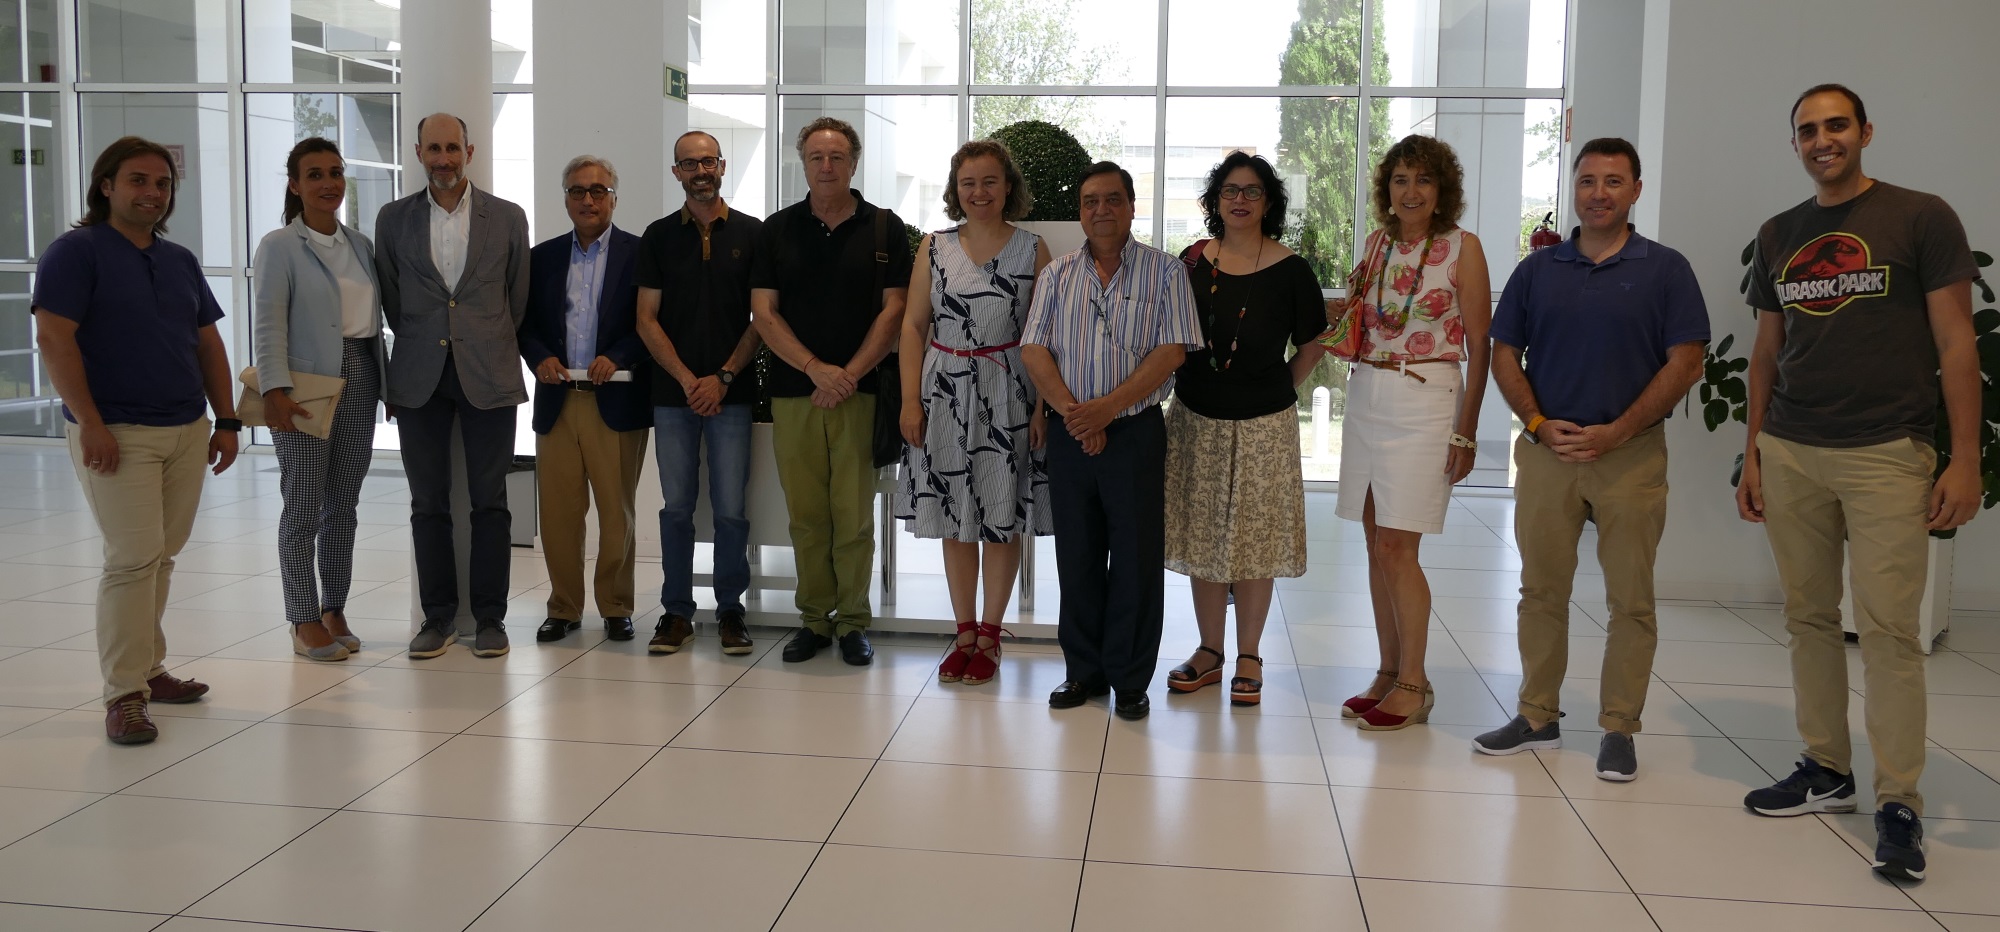 Representantes del sector Turismo de Aragón se reúnen en ITAINNOVA invitados por el proyecto DIGITOURISM